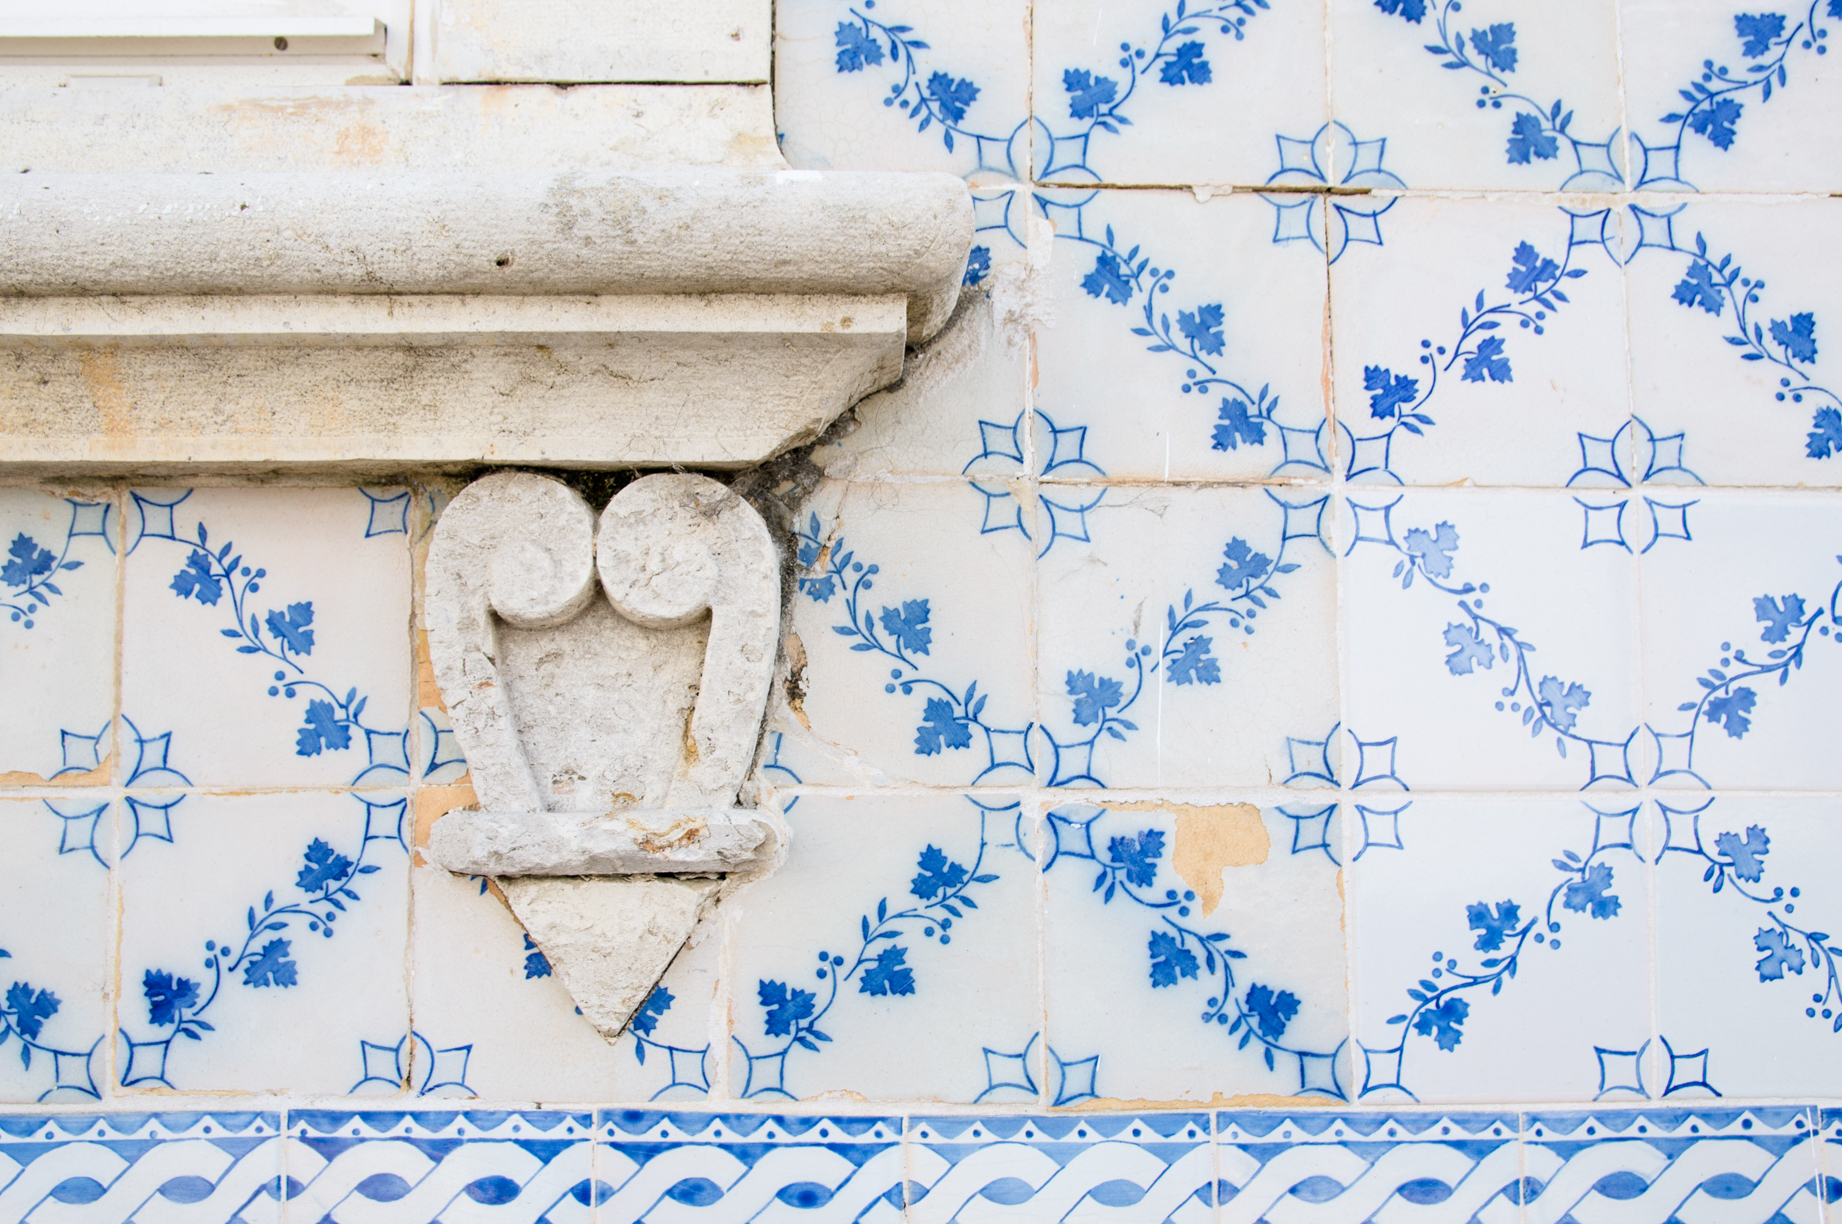 Tiles of Albufeira, Portugal